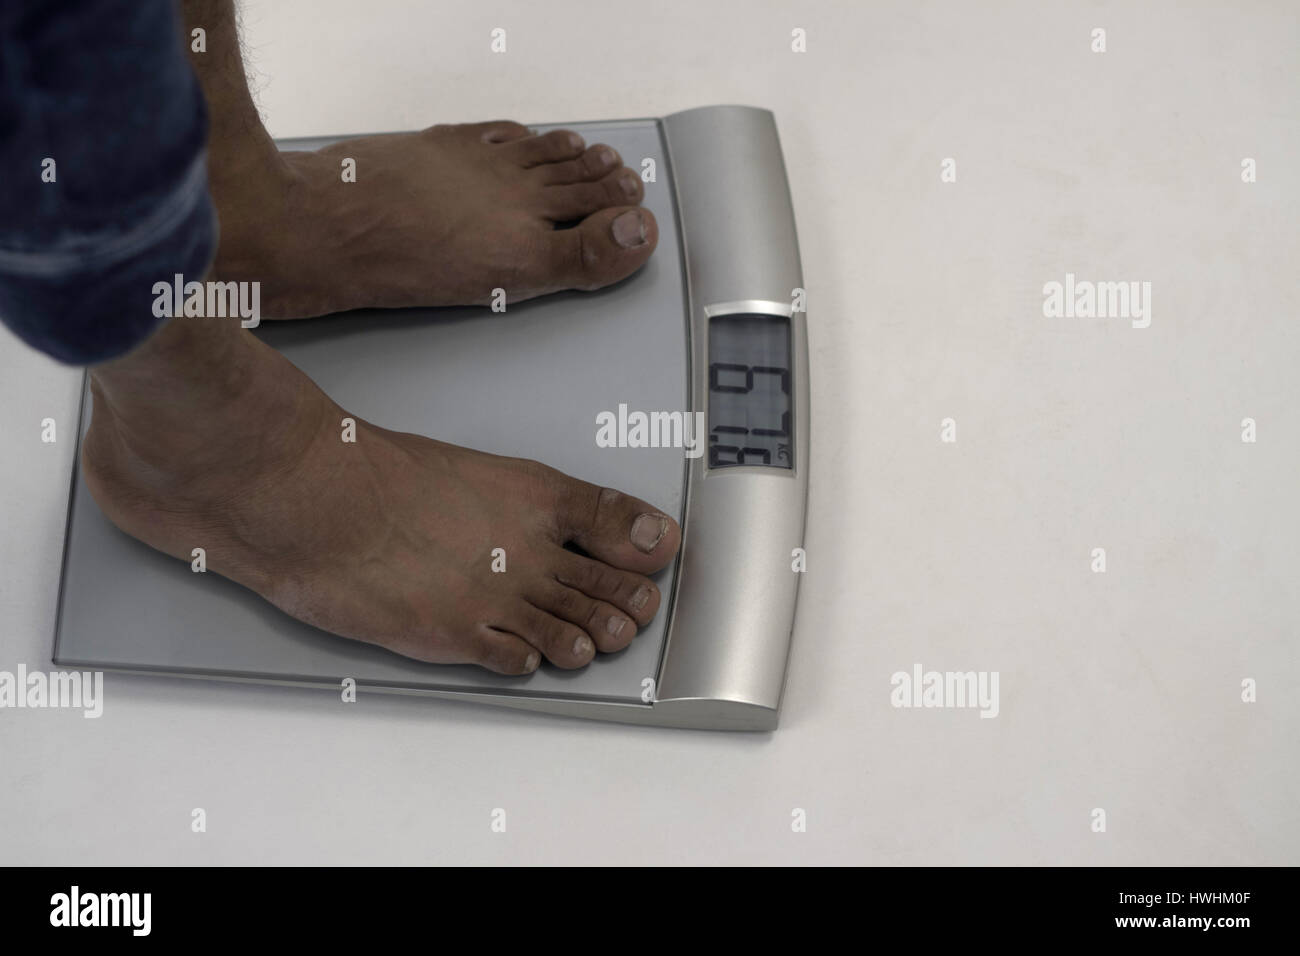 Homme debout sur l'échelle de pesage numérique montrant 67,8 kg Banque D'Images